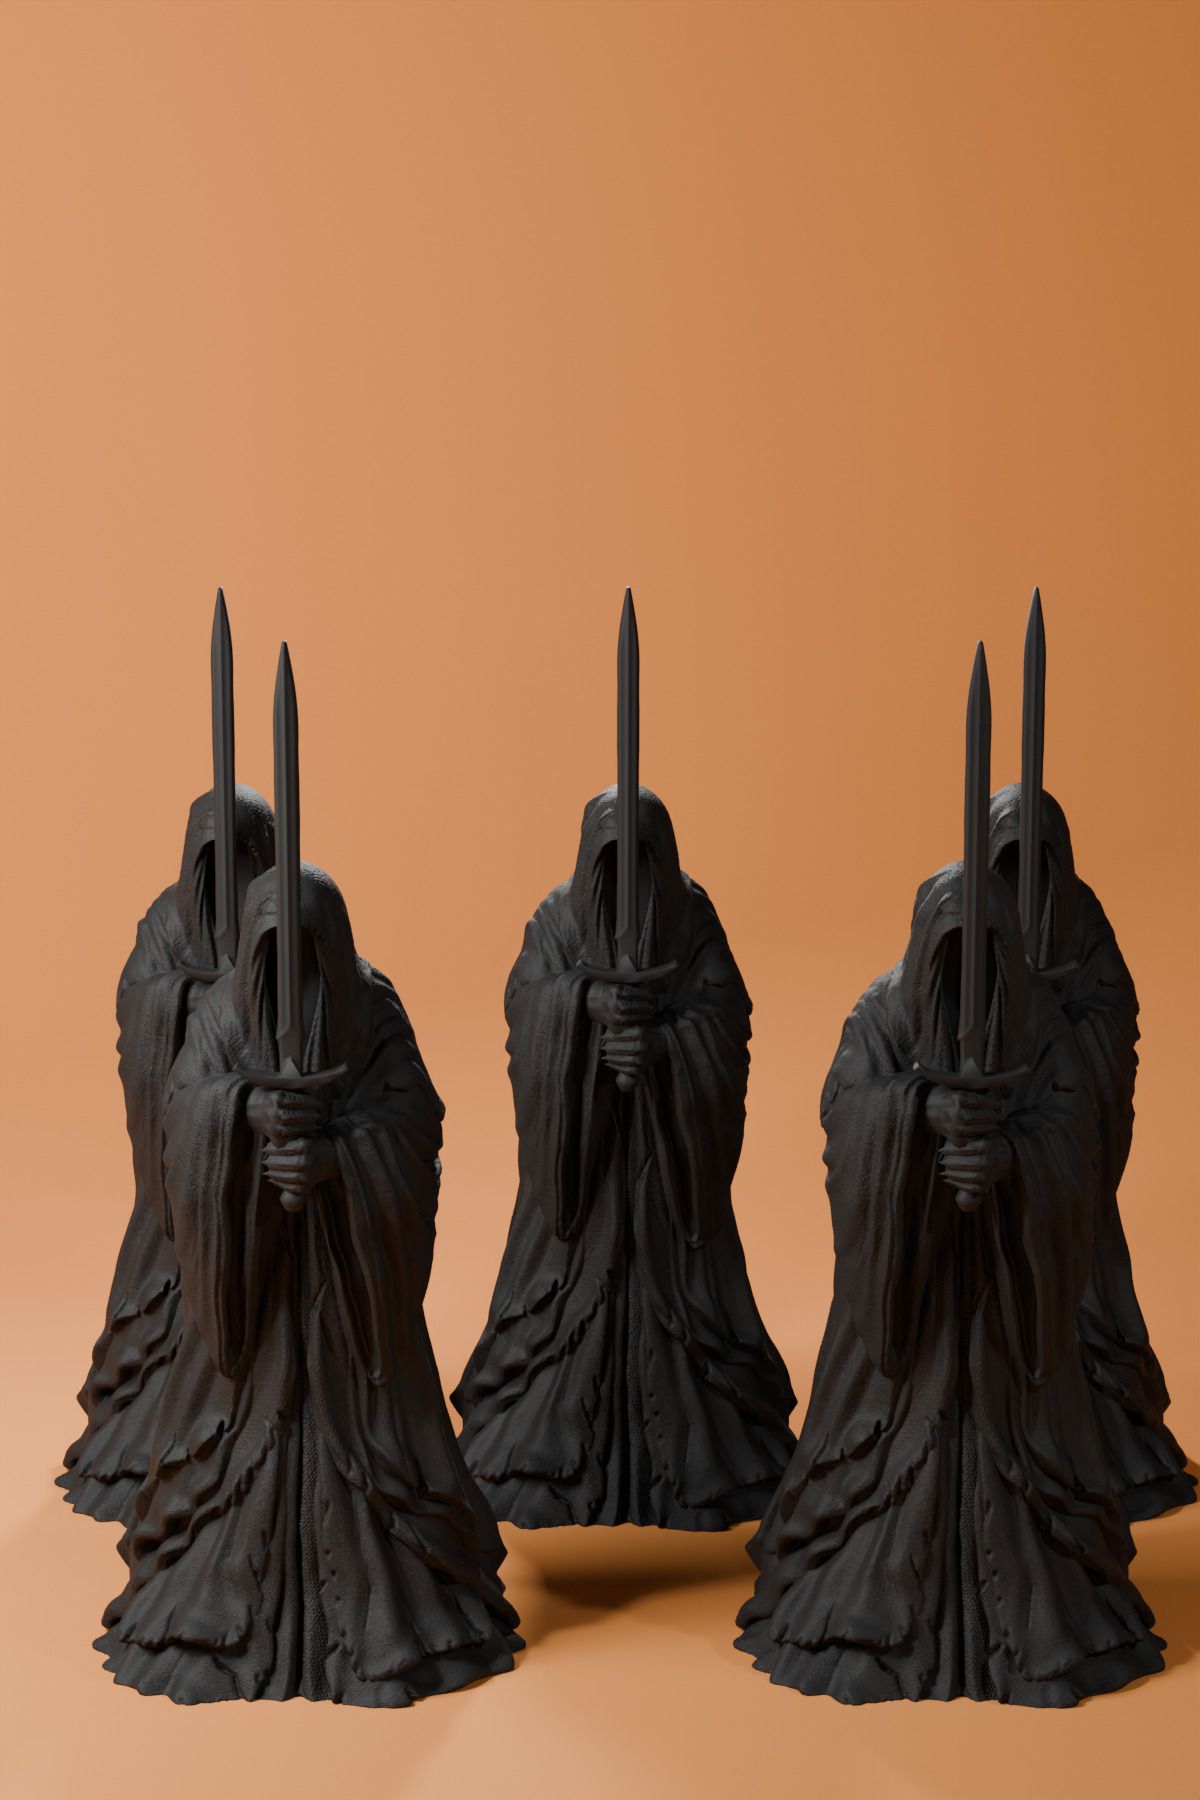 Cuboid 3D Küçük Boy 10 Cm Dekoratif ' Yüzüklerin Efendisi Nazgul ' 5'li Set Heykel Figür Büst Siyah Renk